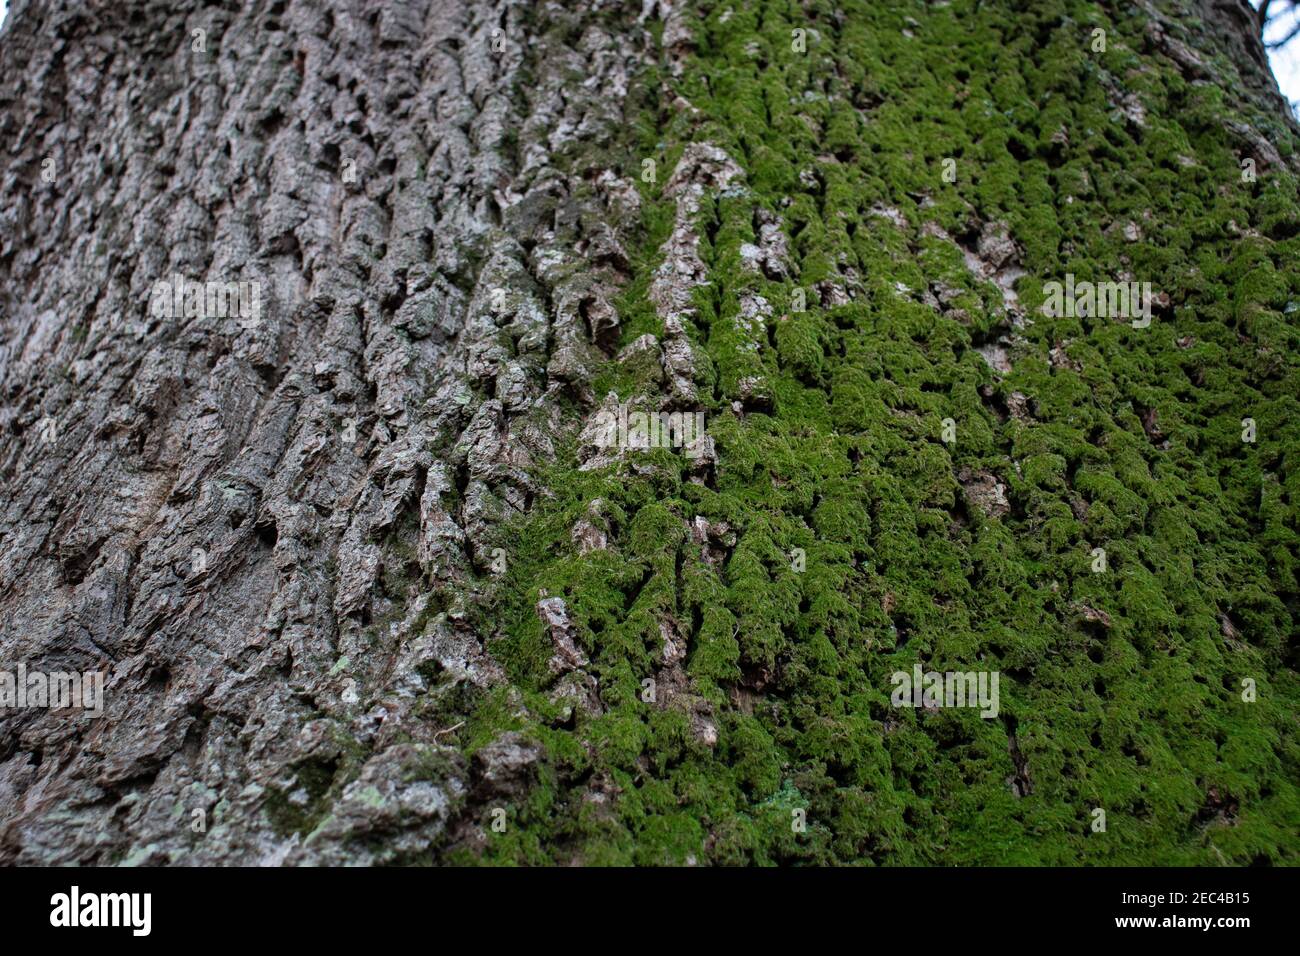 Muschio verde che cresce su corteccia ruvida dell'albero Foto Stock